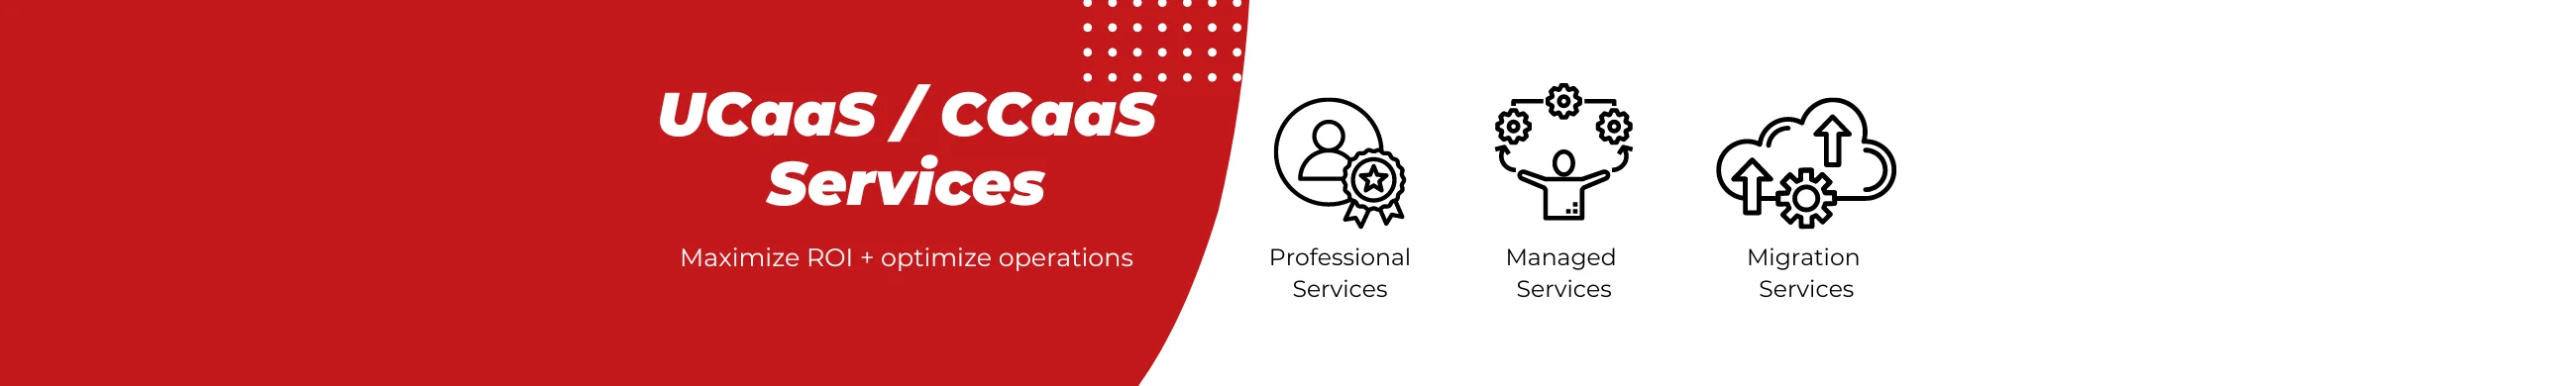 UCaaS / CCaaS Services